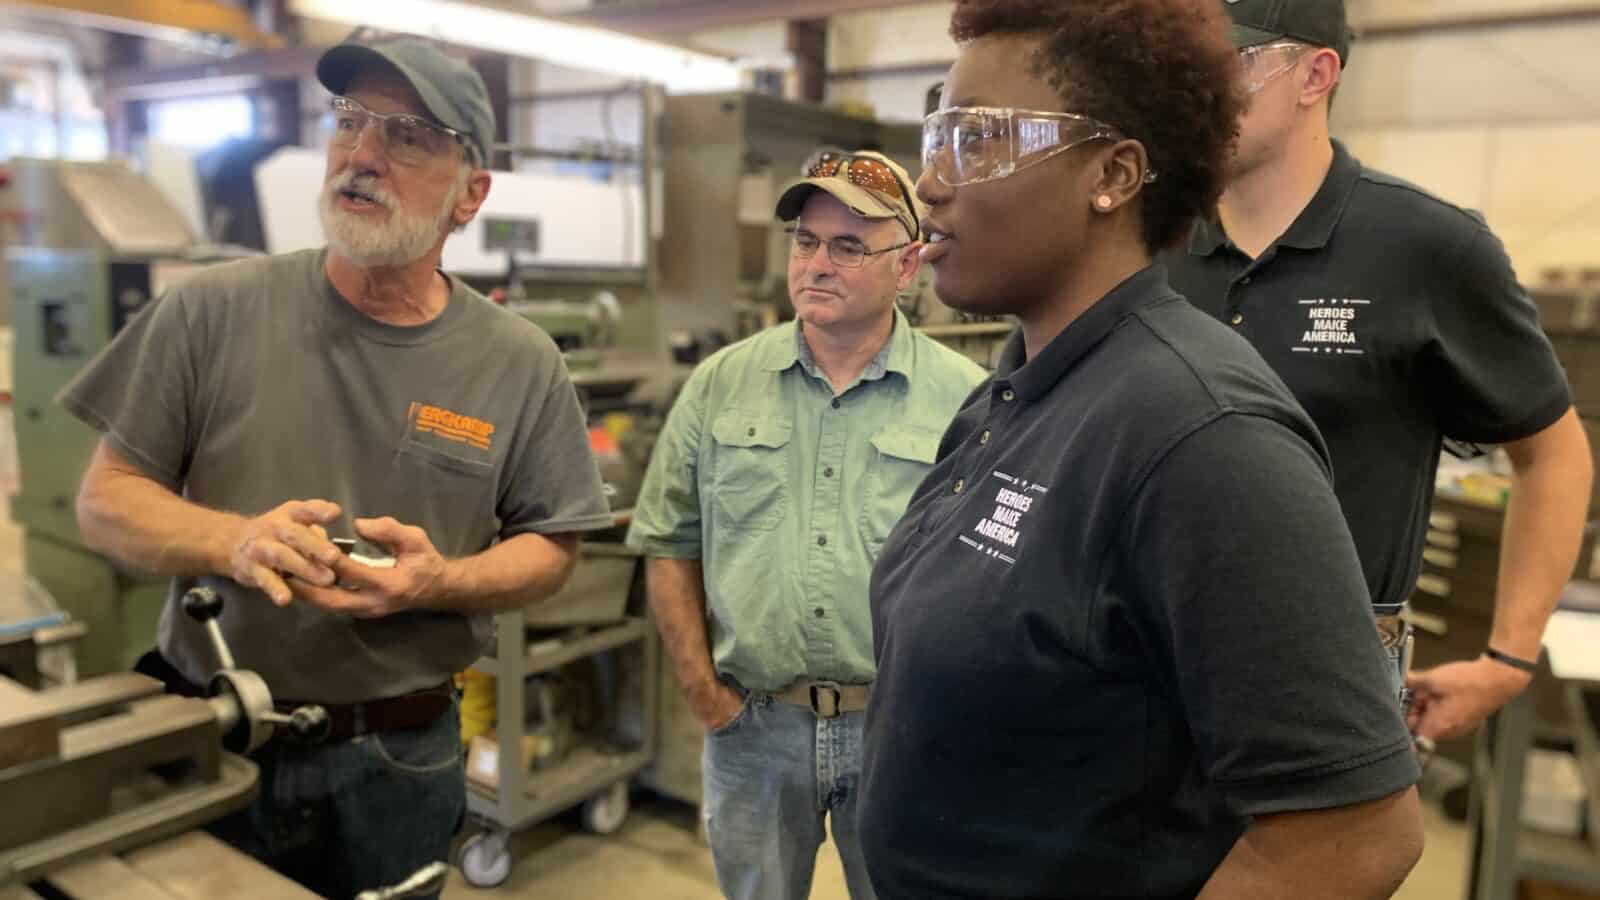 Female veteran participates in hands-on manufacturing training program